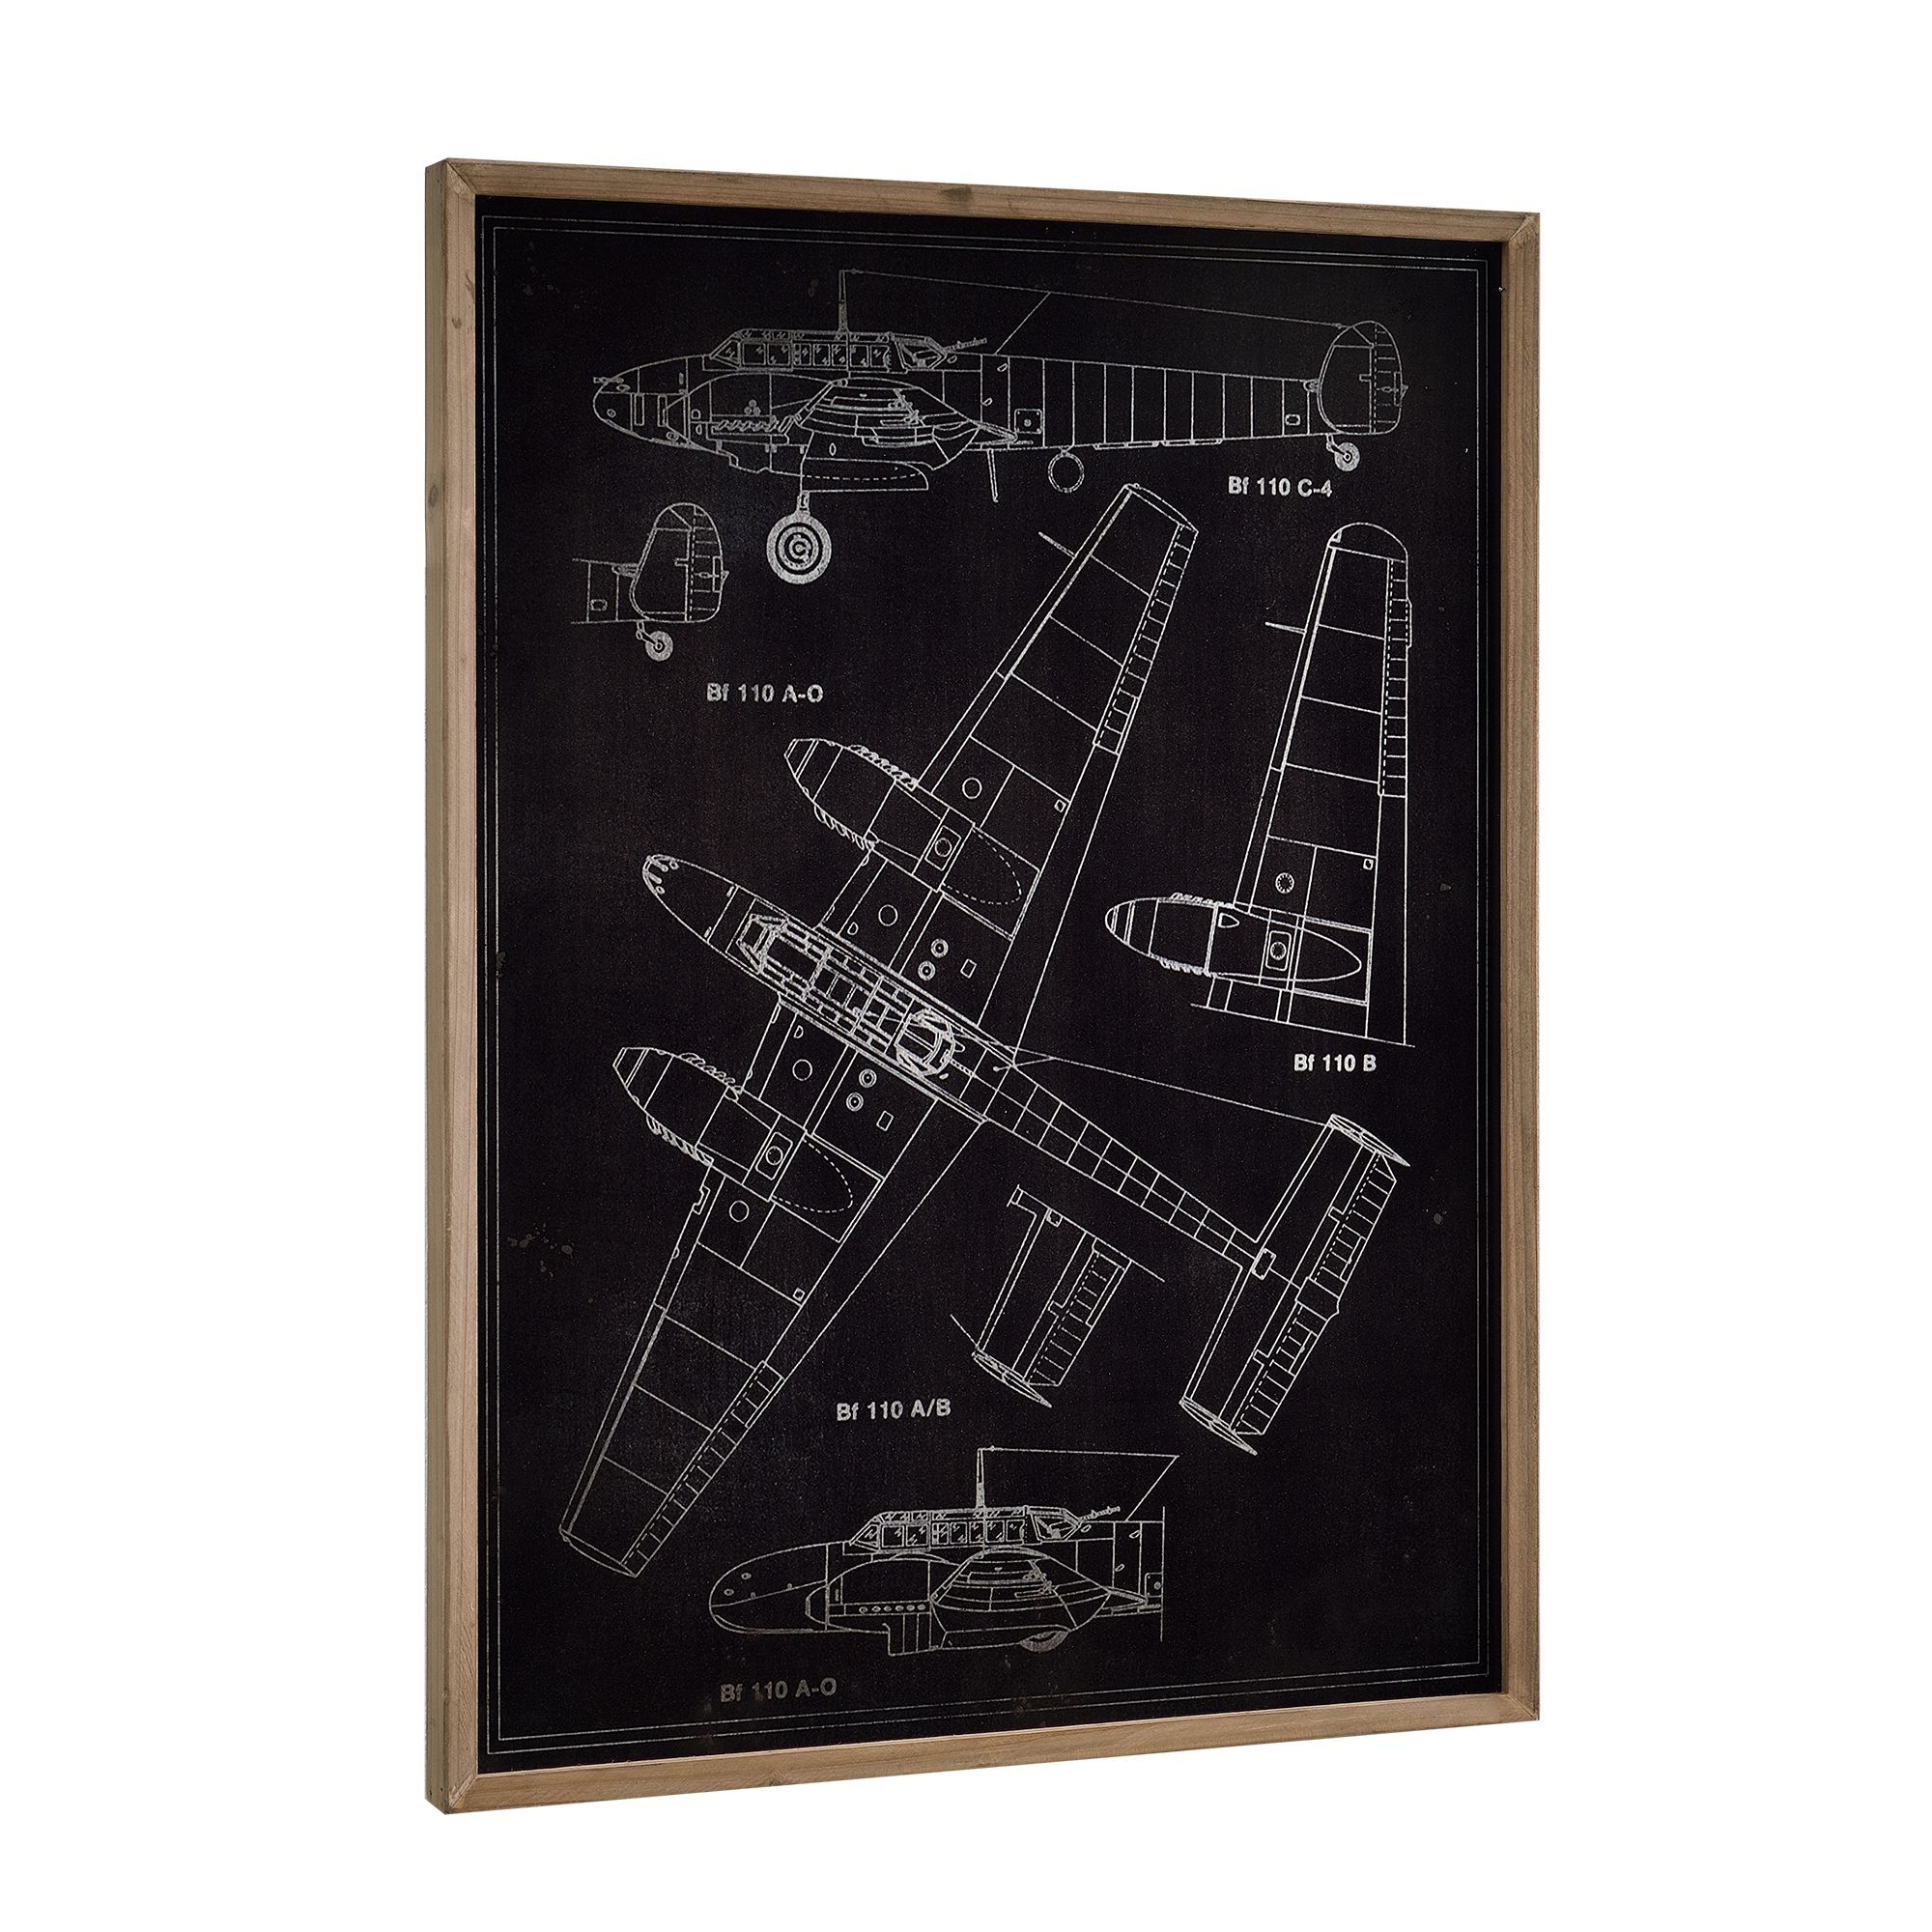 [art.work] Designový obraz na stěnu - hliníková deska - letadlo (nákres) - zarámovaný - 80x60x2,8 cm - H.T. Trade Service GmbH & Co. KG